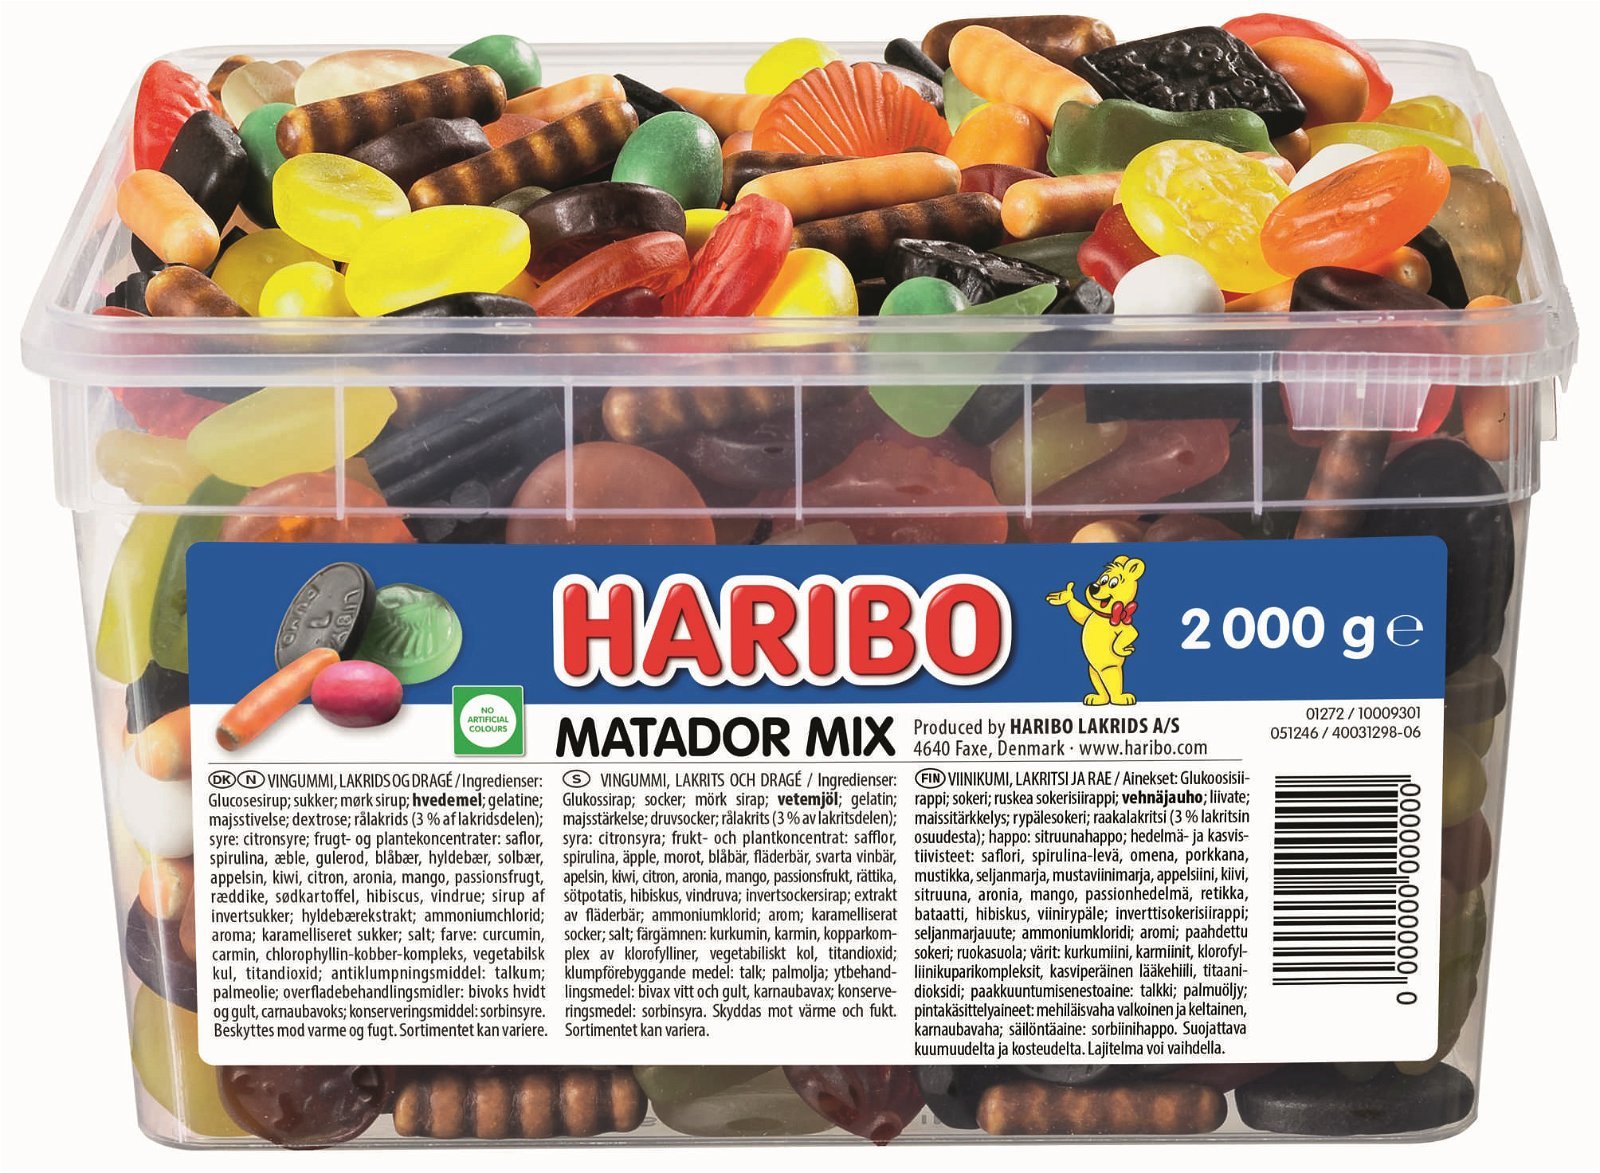 Haribo Matador Mix